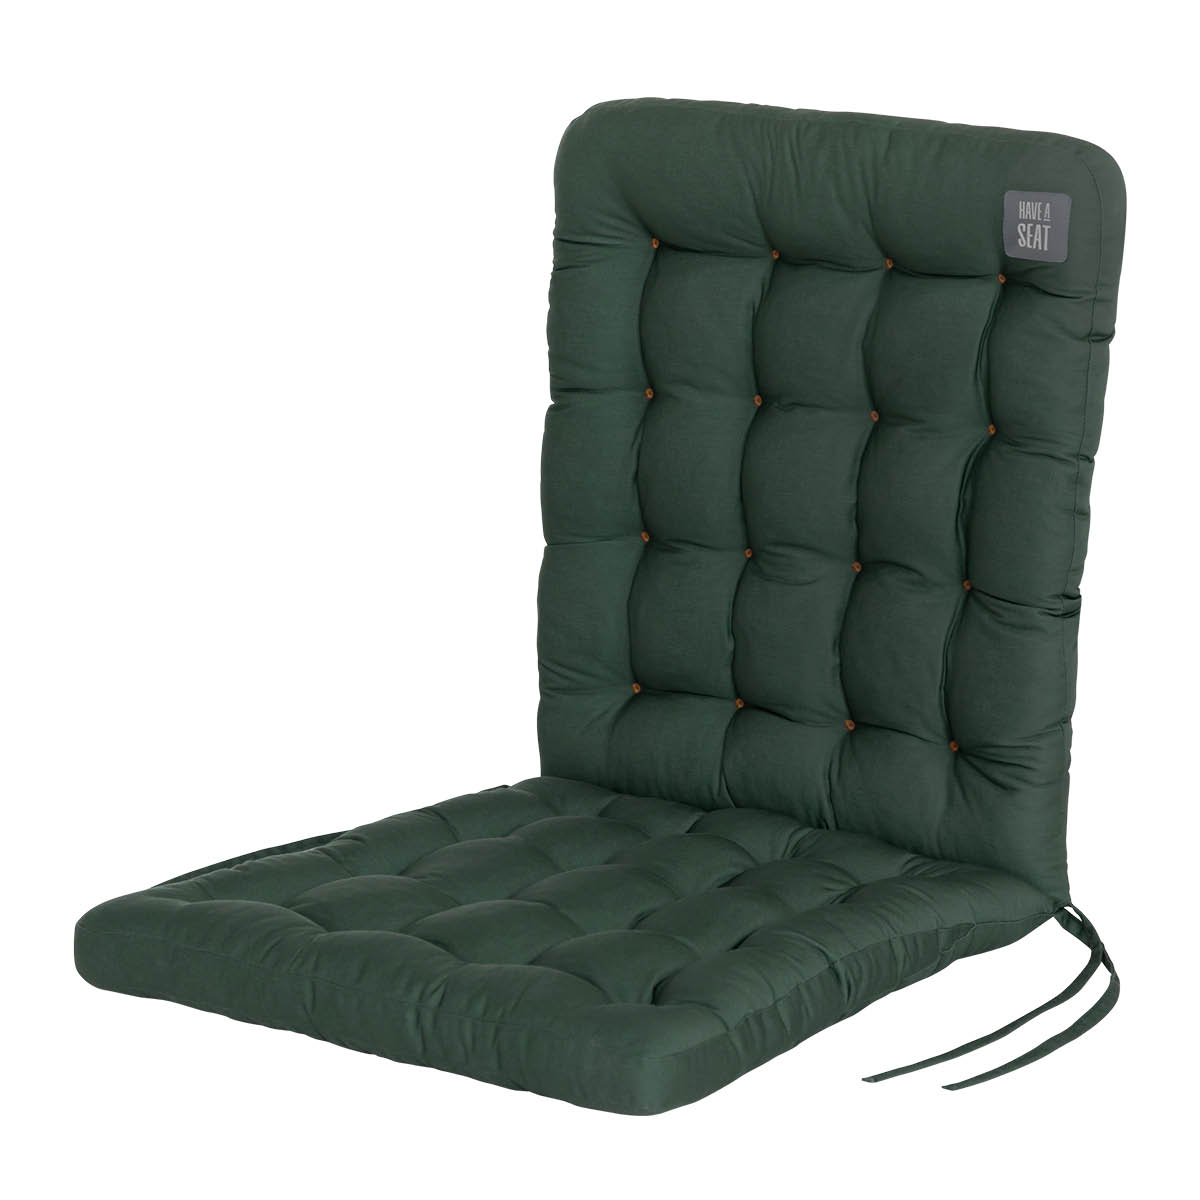 Cuscino per sedia con schienale basso